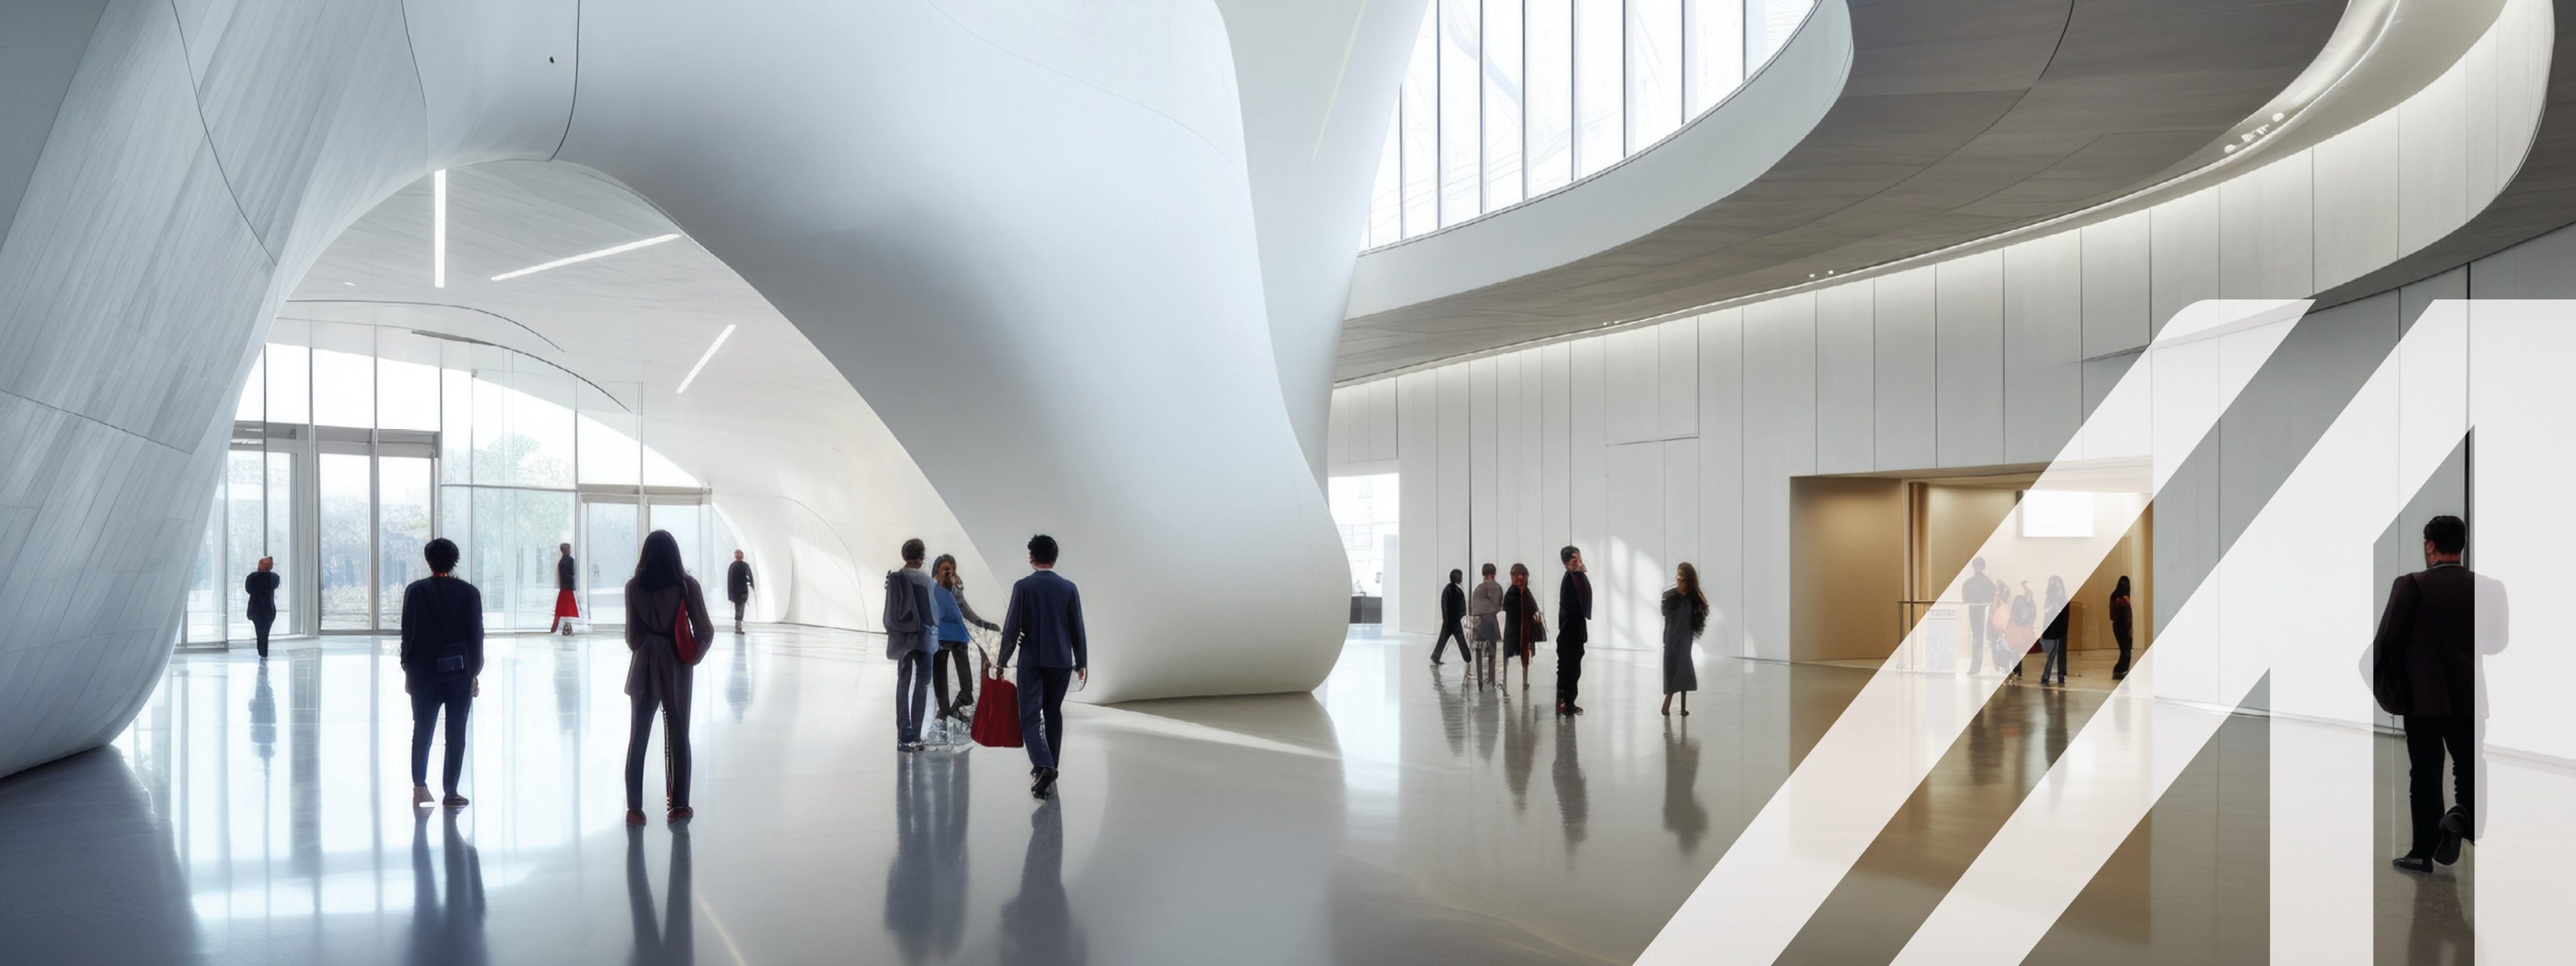 Eingangshalle mit Menschen eines modernen Kulturzentrums, moderne Architektur. Generative AI